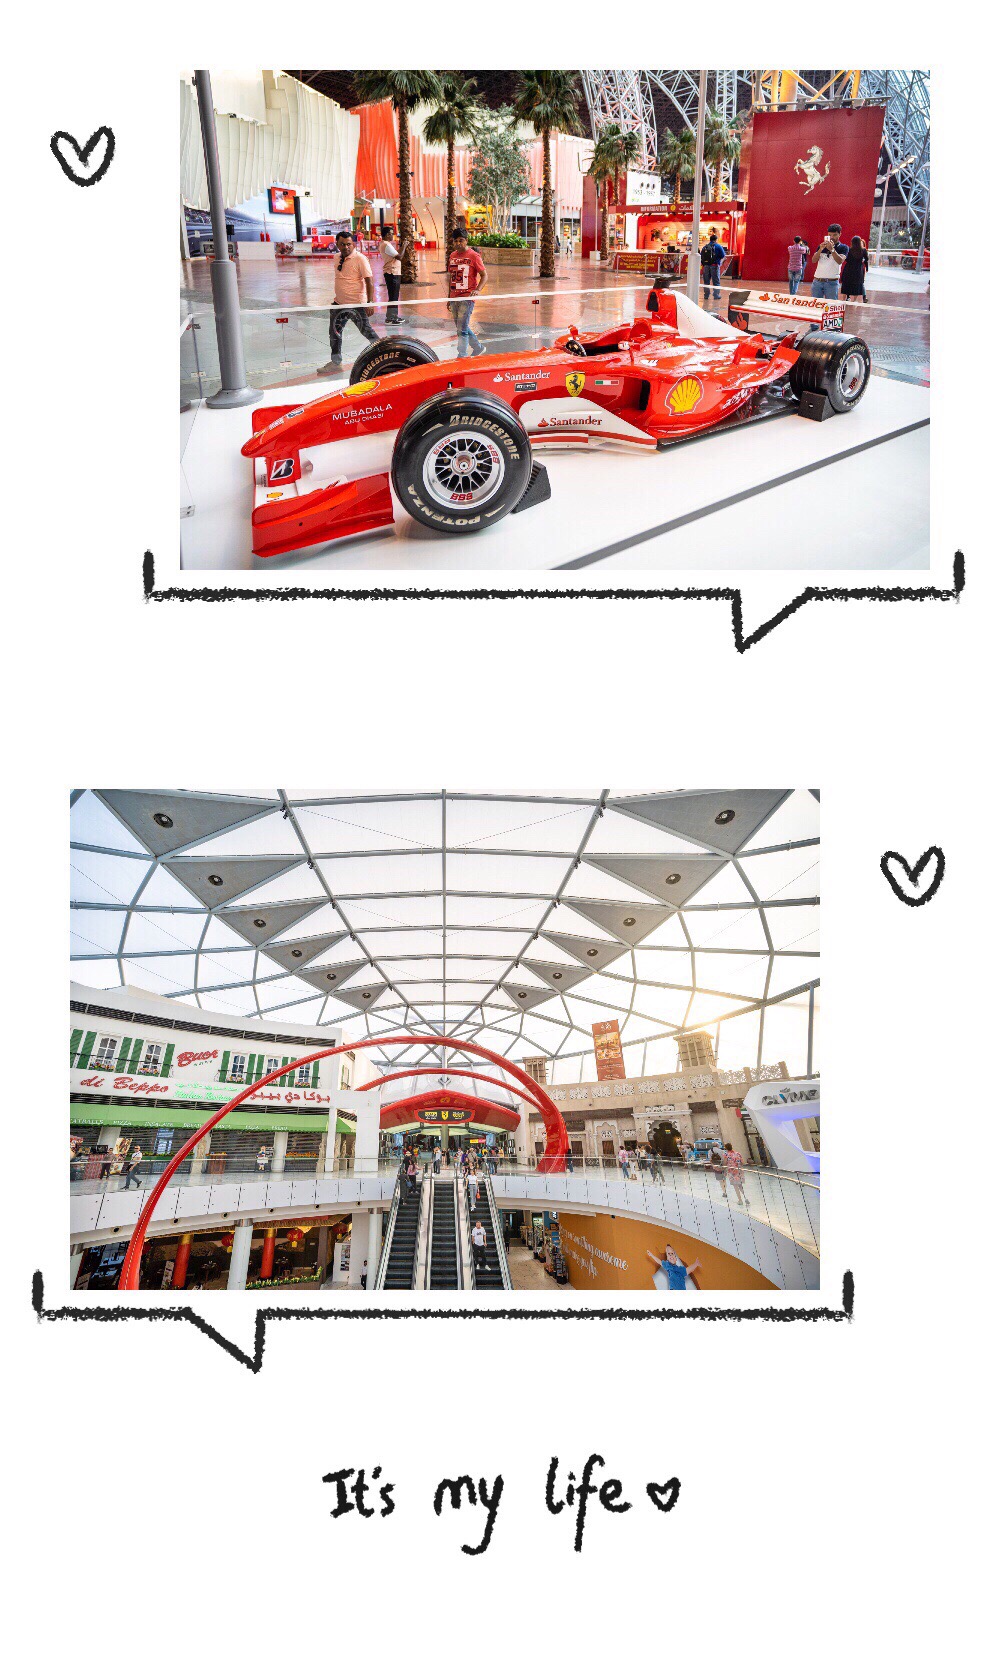 速度与激情的传奇品牌，法拉利世界！ 法拉利主题公园  Ferrari World，一个顶级跑车🏎的异